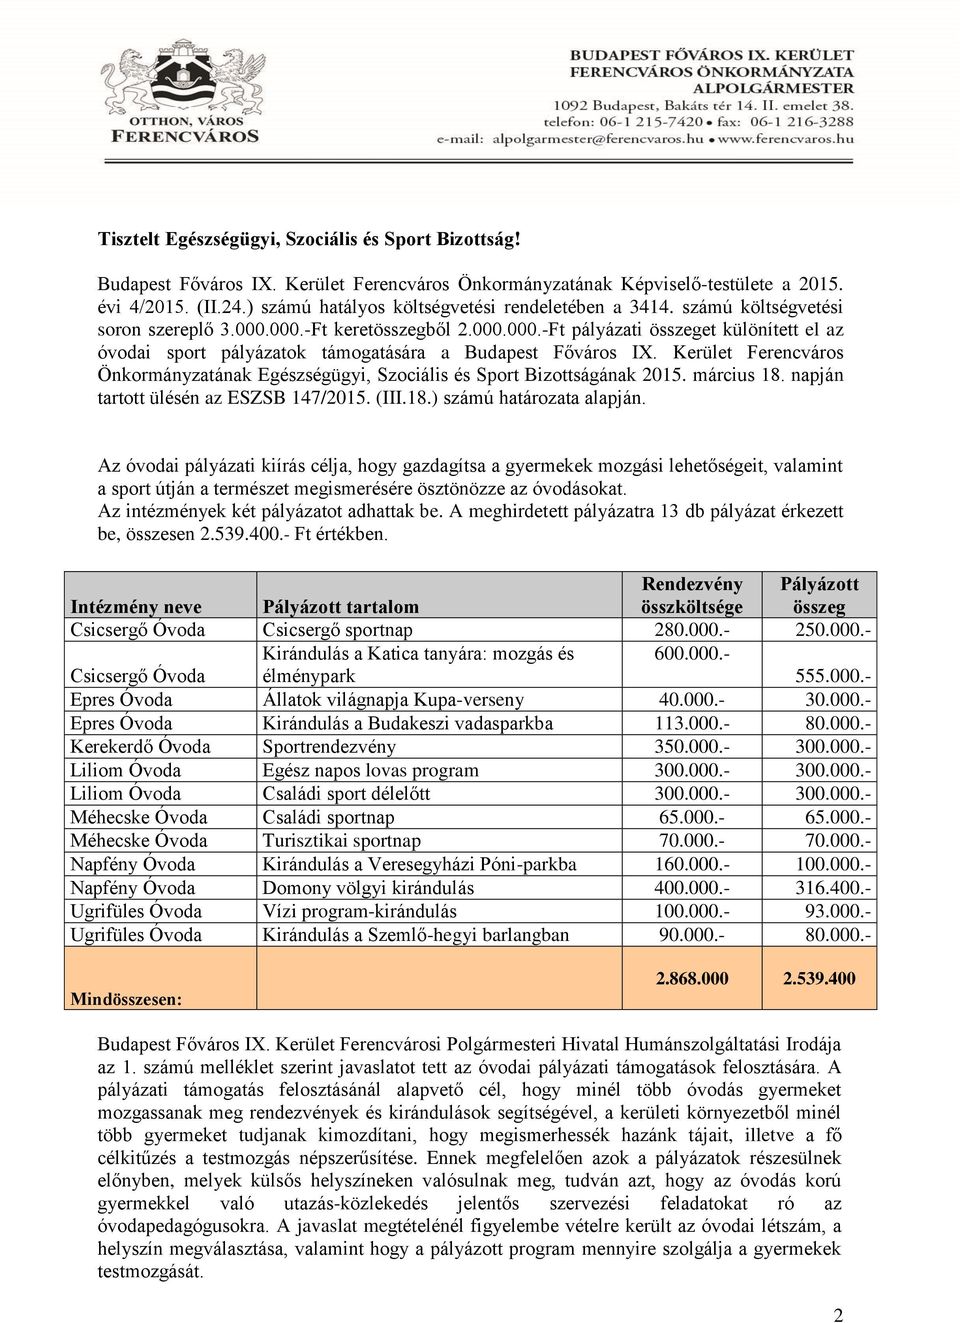 Kerület Ferencváros Önkormányzatának Egészségügyi, Szociális és Sport Bizottságának 2015. március 18. napján tartott ülésén az ESZSB 147/2015. (III.18.) számú határozata alapján.